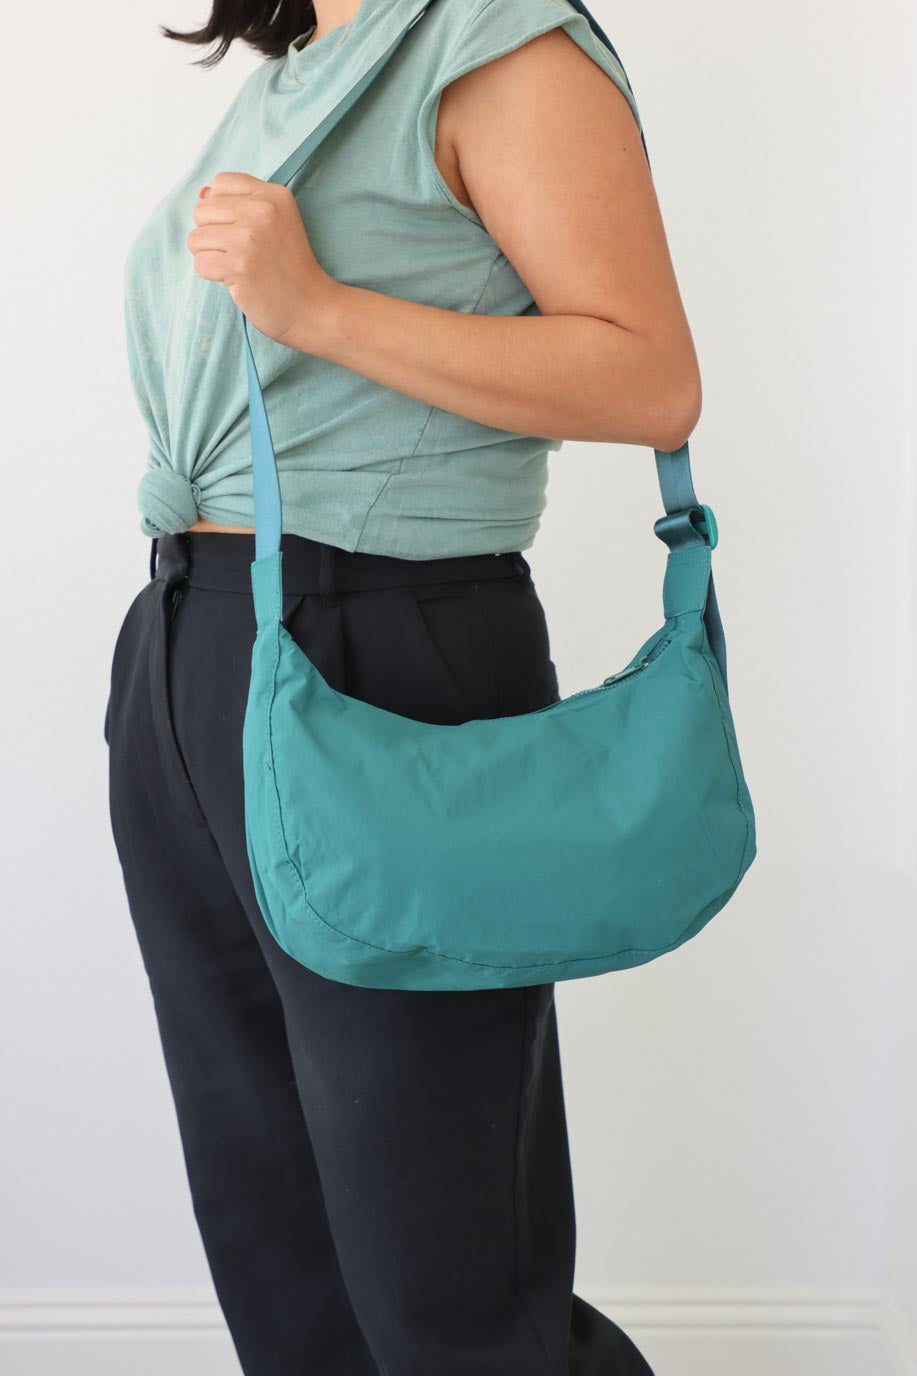 girl carrying teal nylon bag